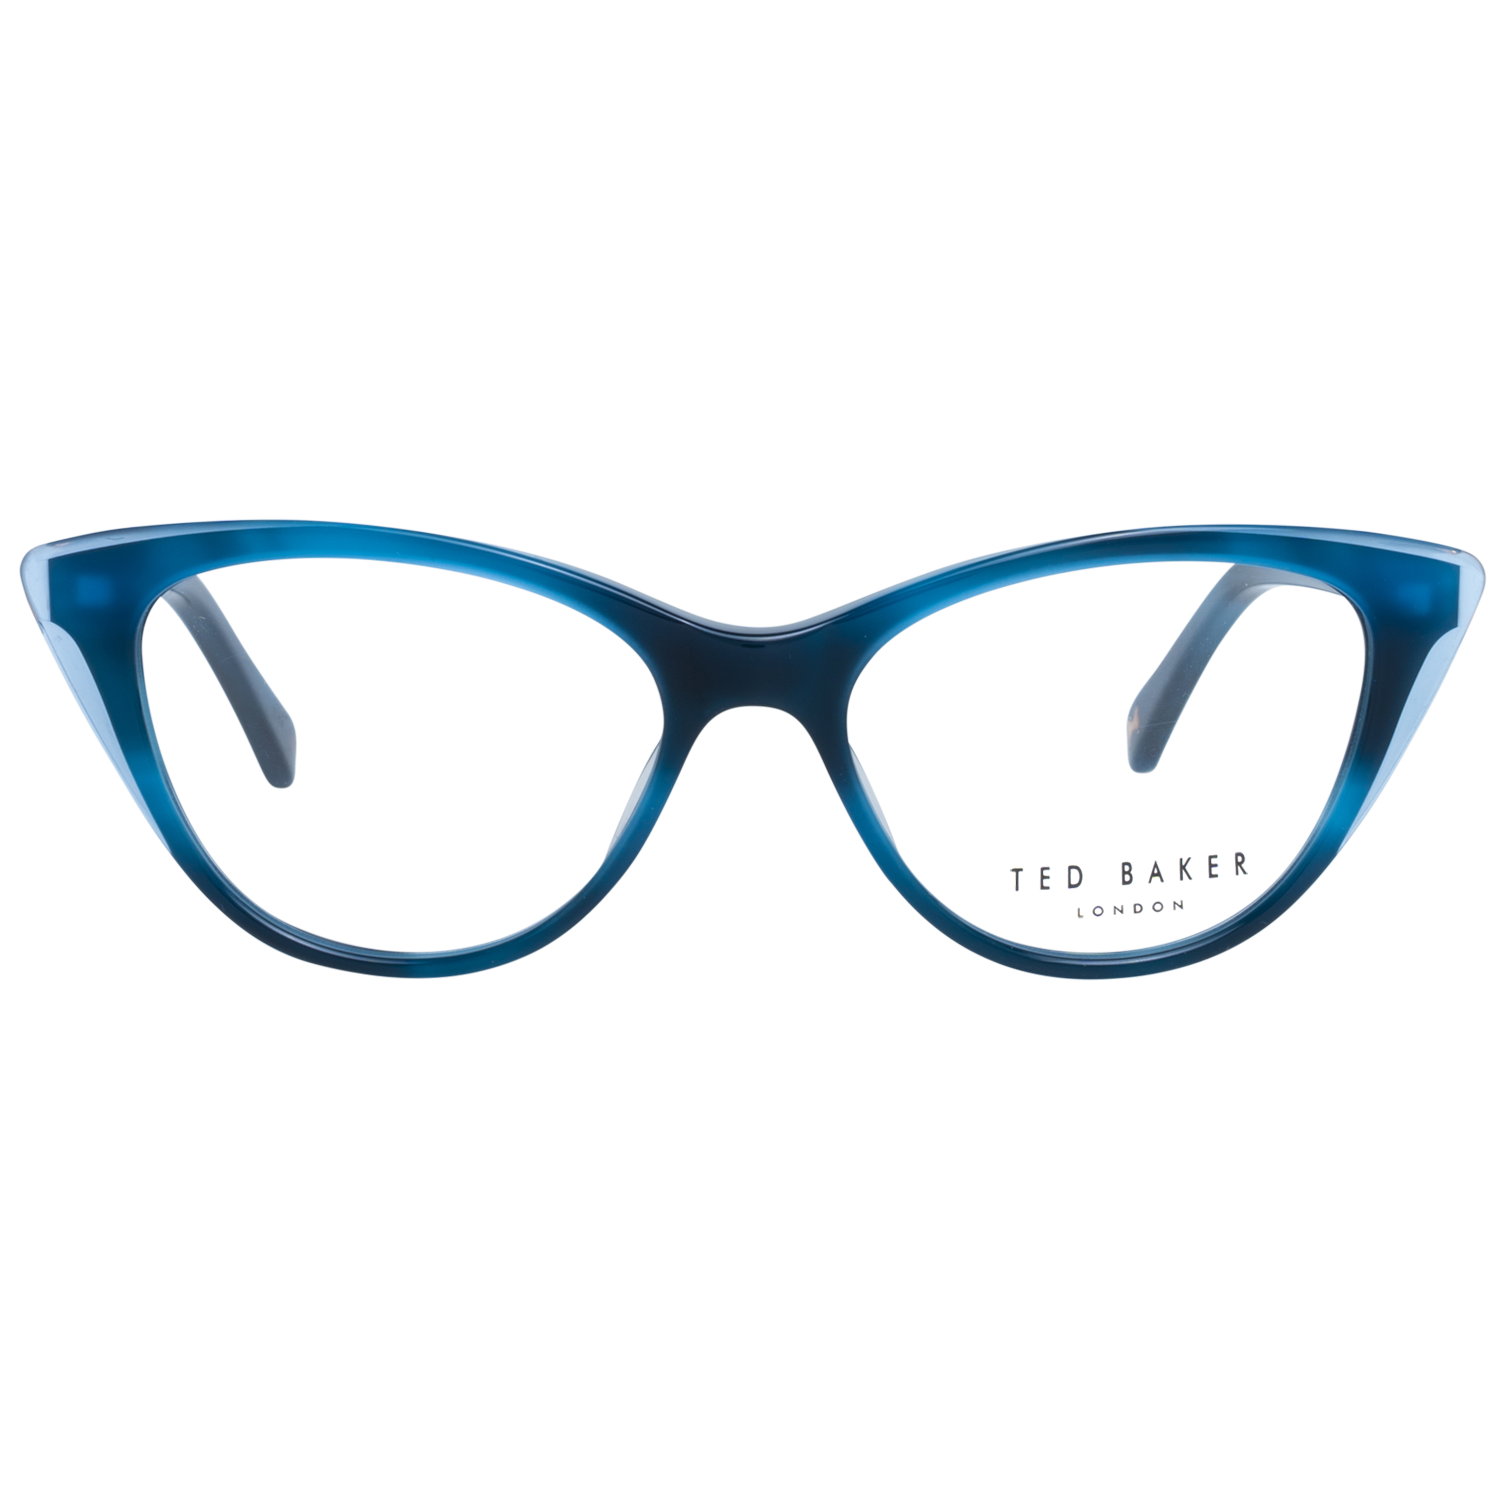 Ted Baker Frames Ted Baker Optical Frame Prescription Glasses TB9194 611 49 Eyeglasses Eyewear UK USA Australia 